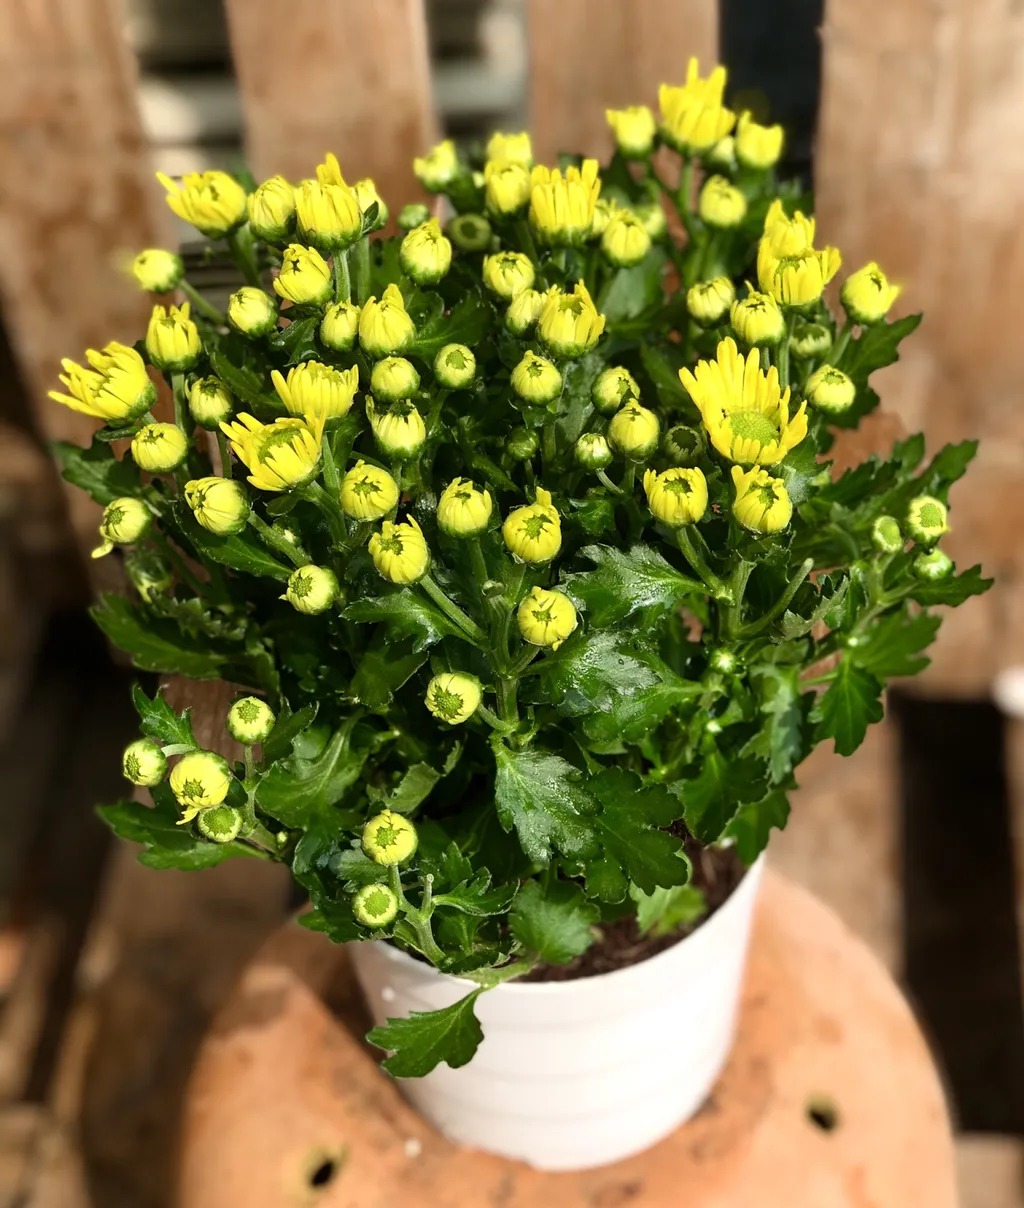 Hoa cúc vàng có thể mang lại cảm giác trẻ trung và tươi mới. Màu vàng sáng của hoa cúc thường được liên kết với sự sảng khoái và năng lượng tích cực.